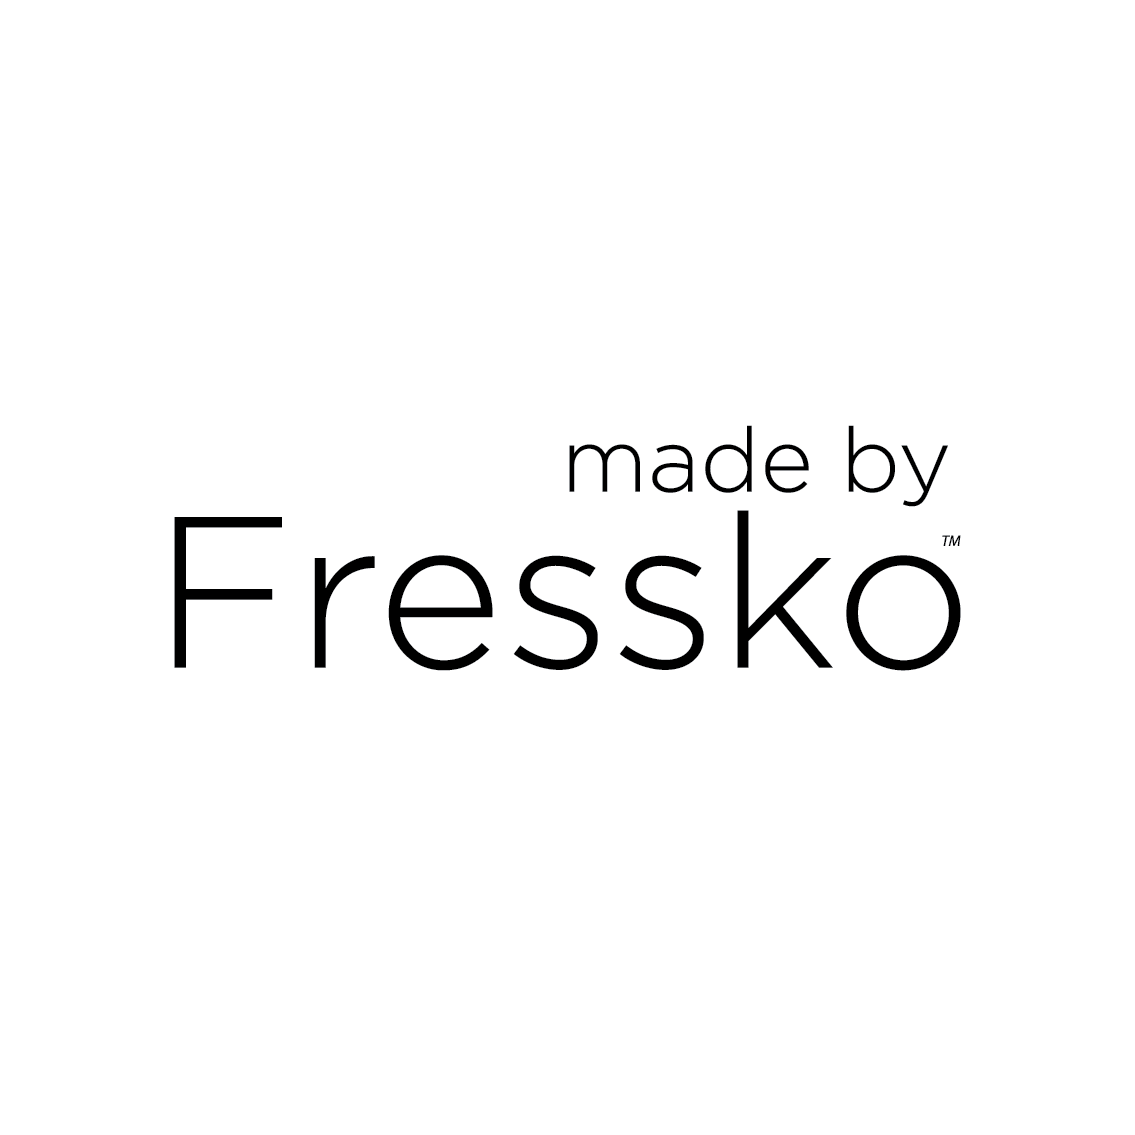 (c) Madebyfressko.com